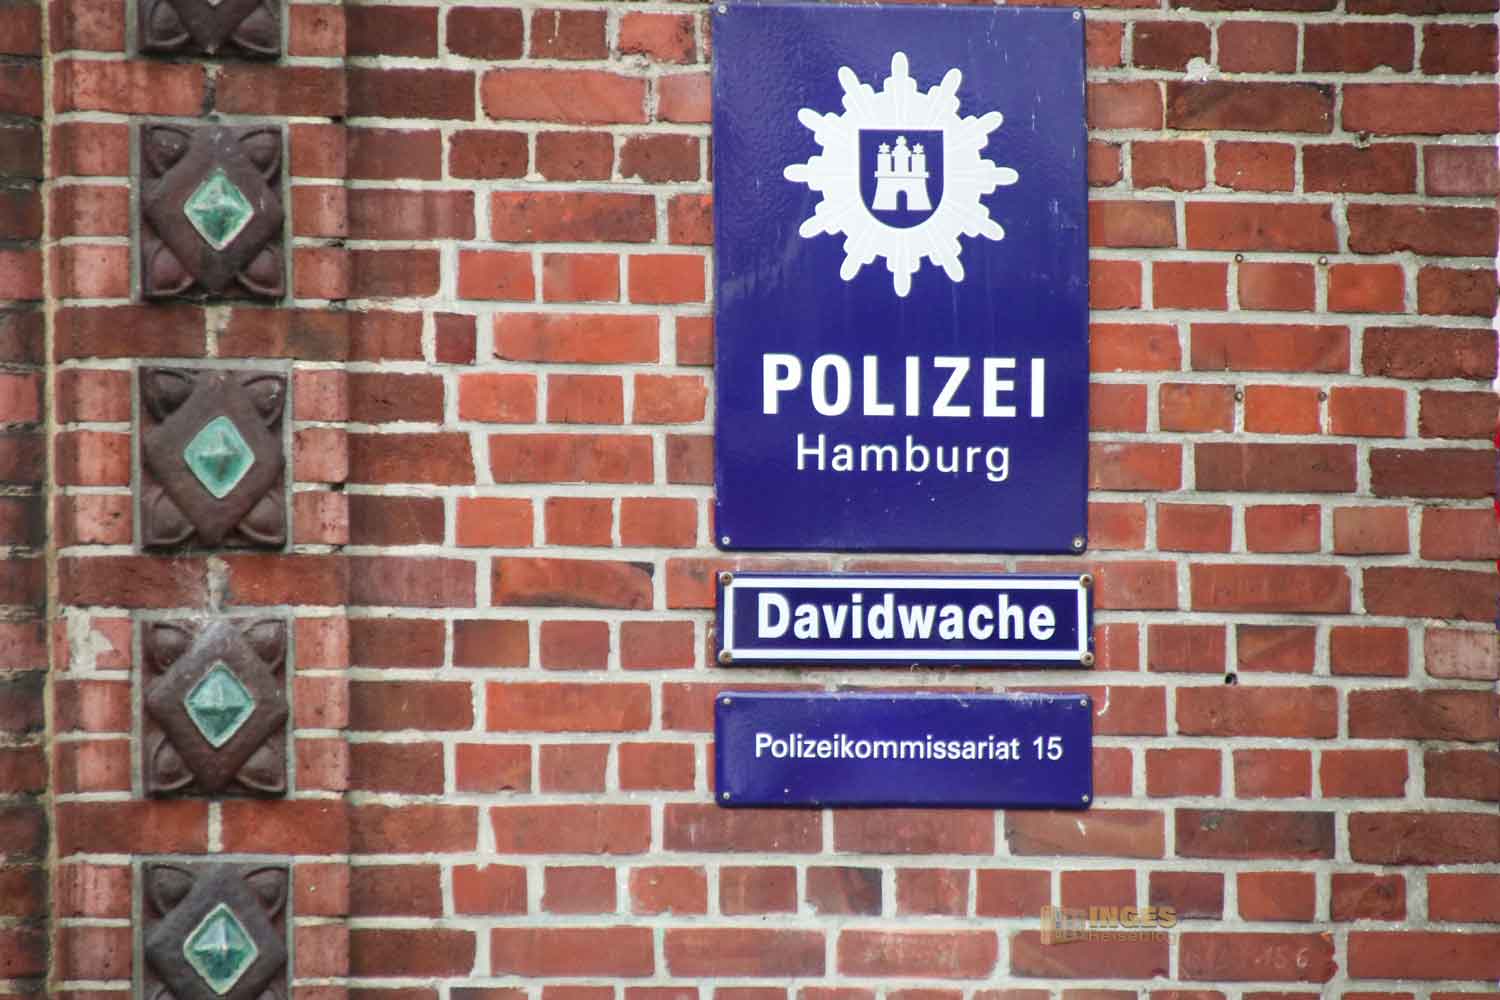 Davidwache St. Pauli Hamburg 6130